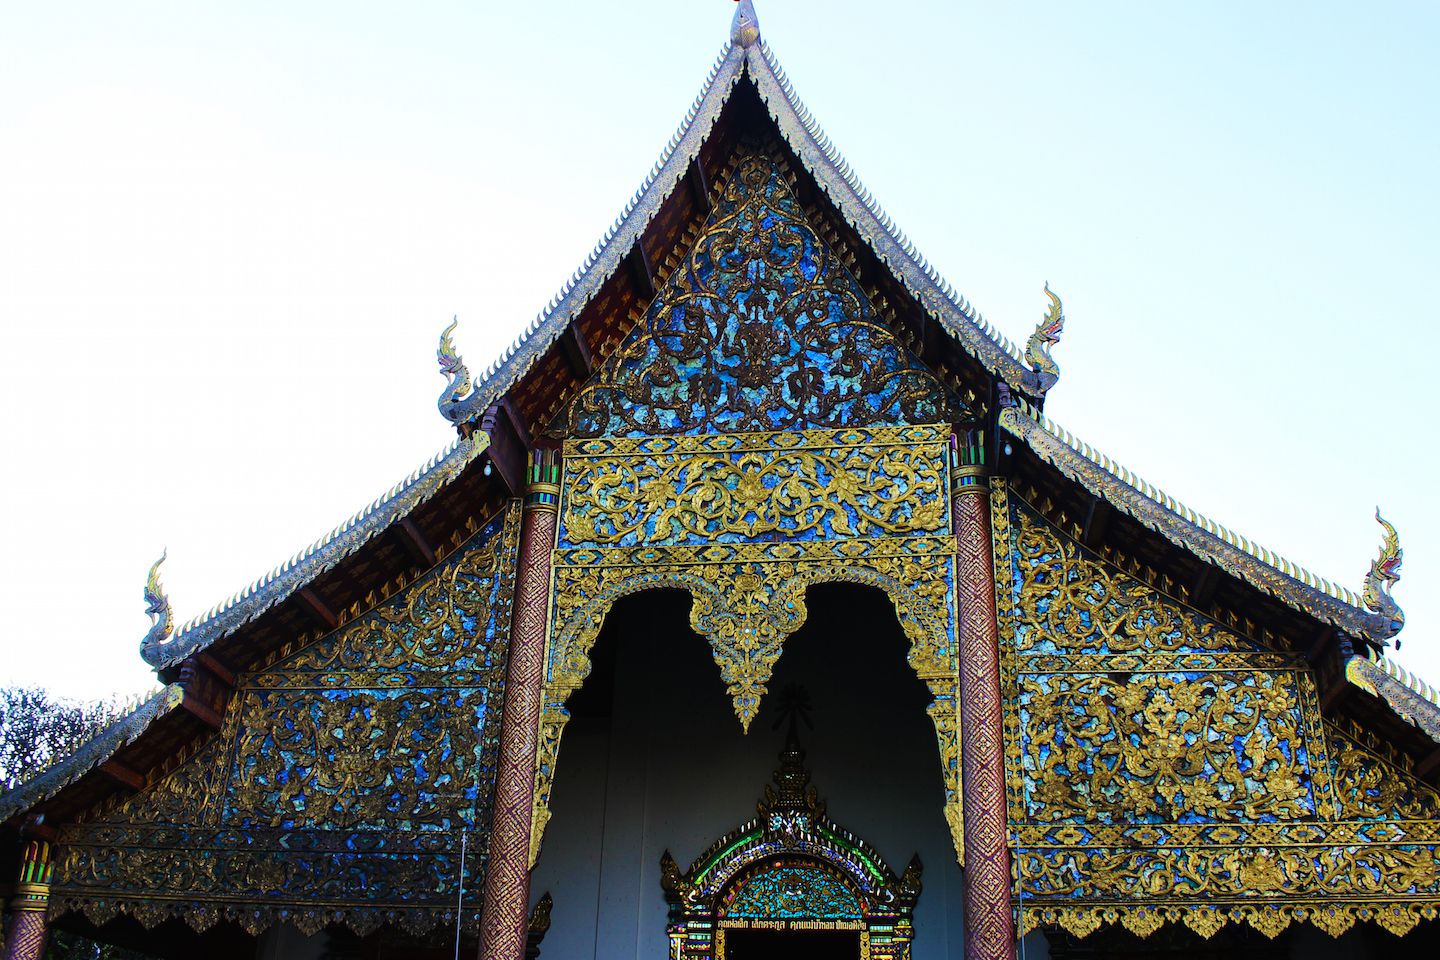 Façade of Wat Chiang Man in Chiang Mai